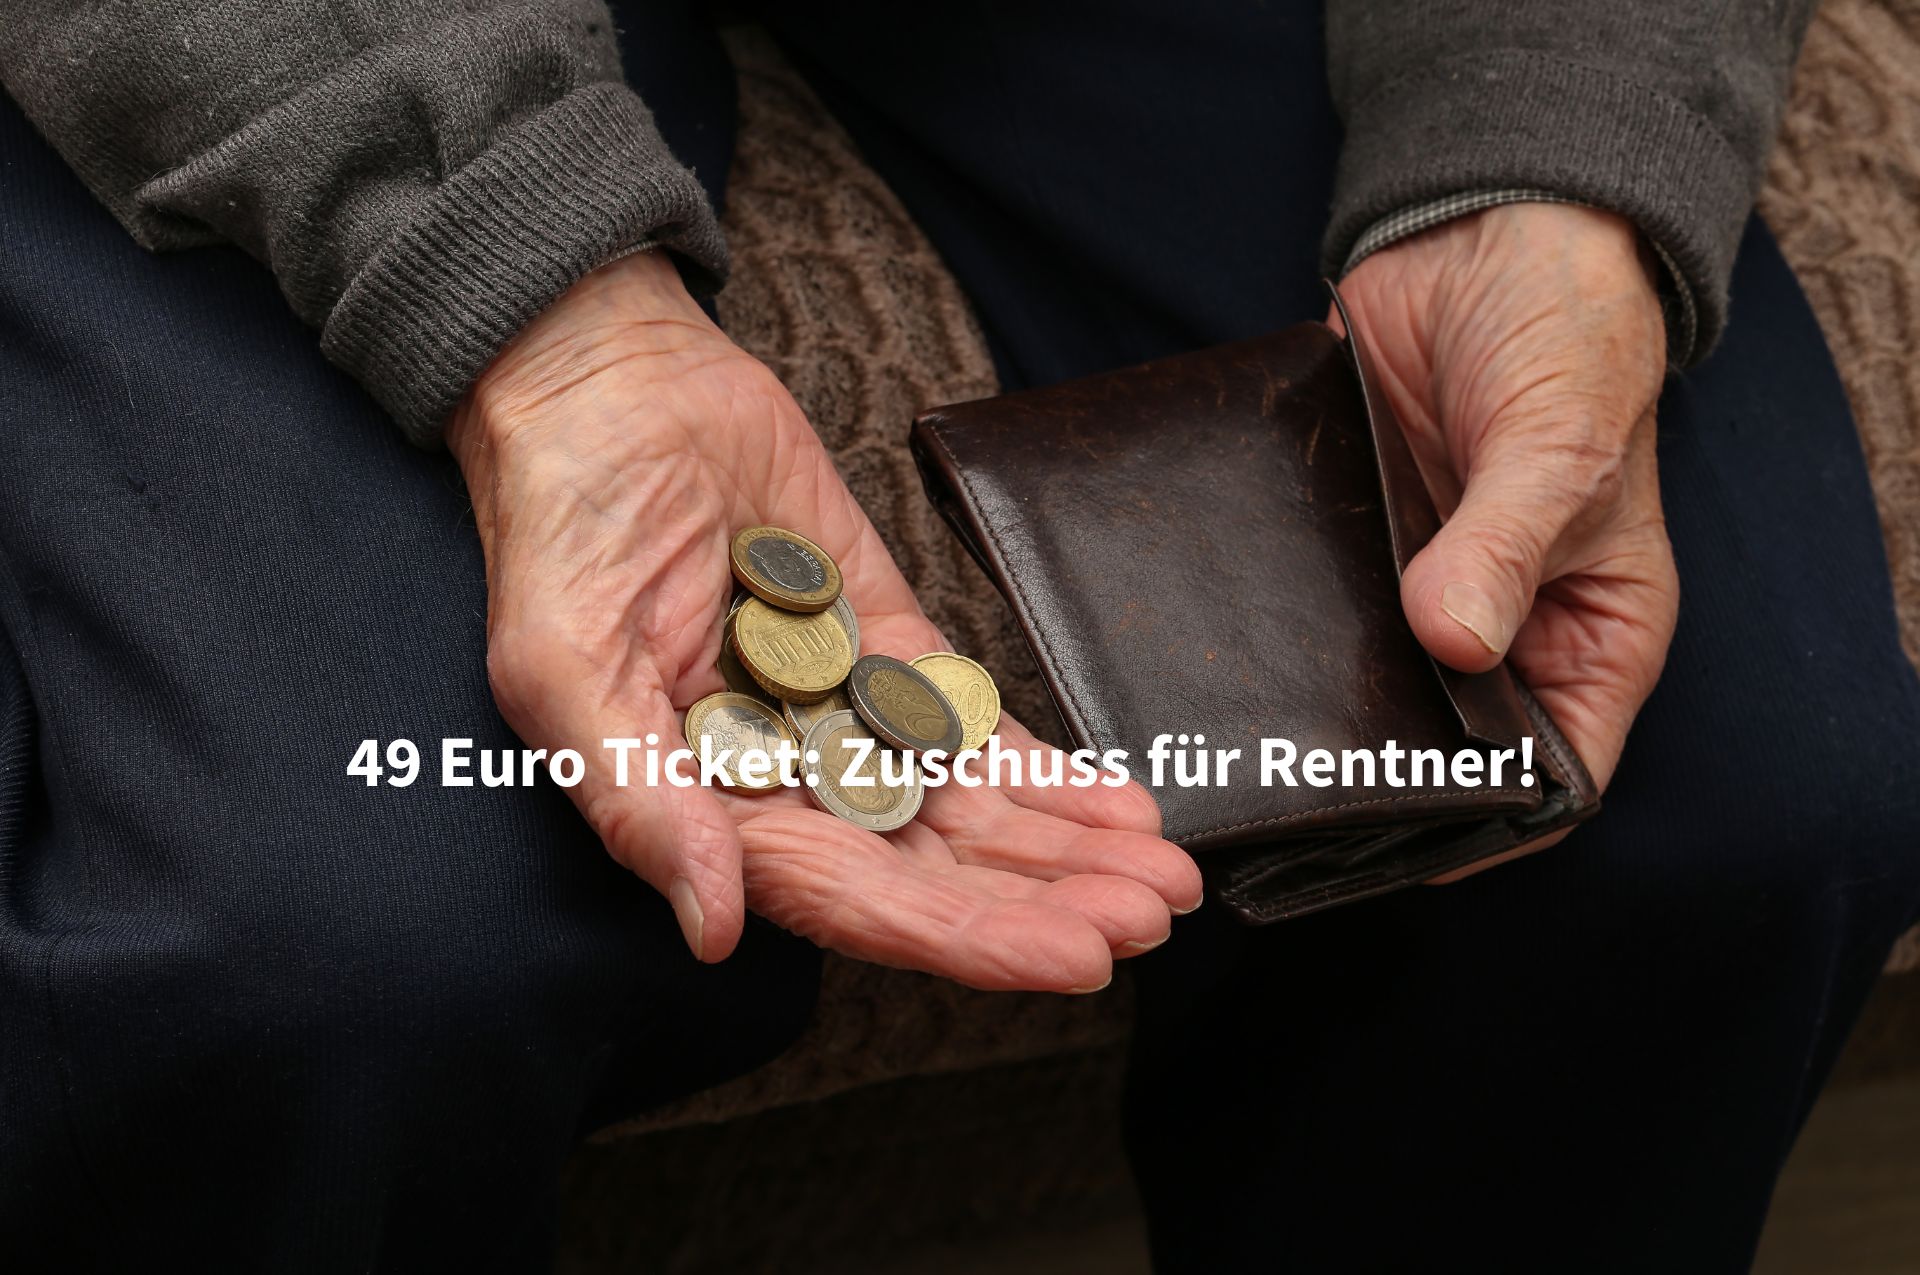 Das 49 Euro Ticket gibt es in einer Stadt kostenlos für Rentner.